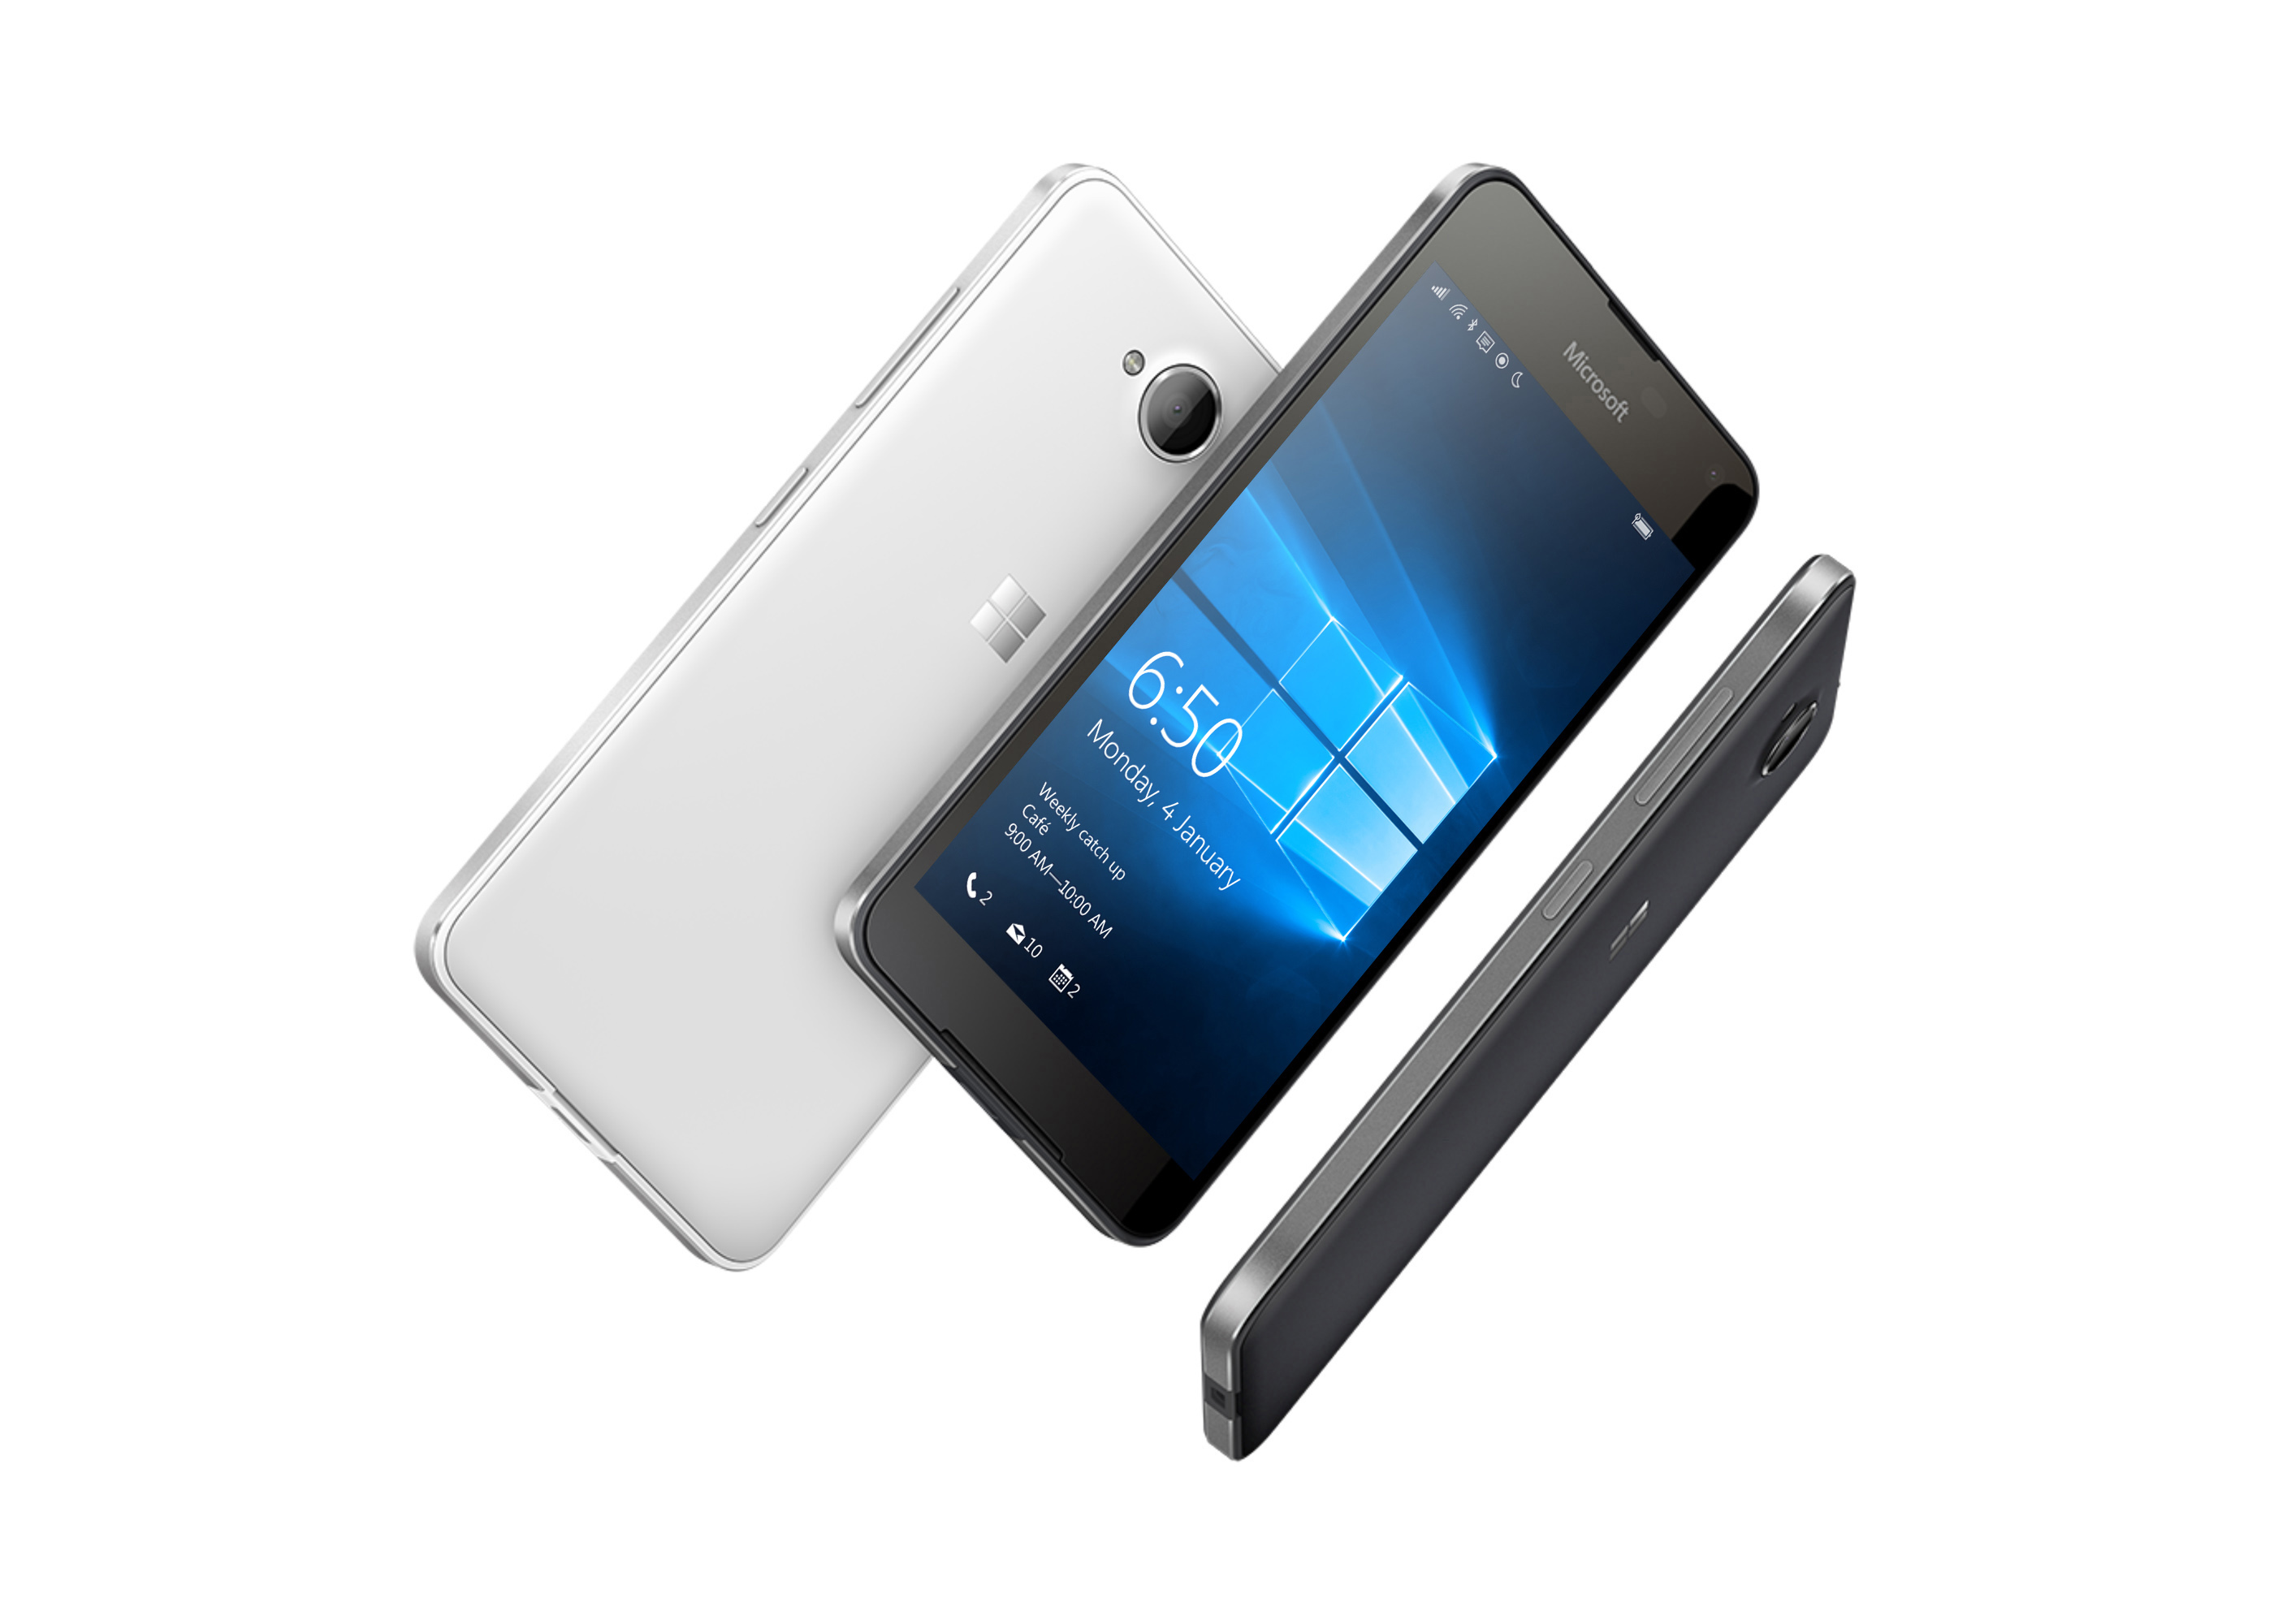 ไมโครซอฟท์ Lumia 650 เปิดการสั่งซื้อล่วงหน้าในประเทศไทยแล้ววันนี้ ที่ราคา 7,190 บาท